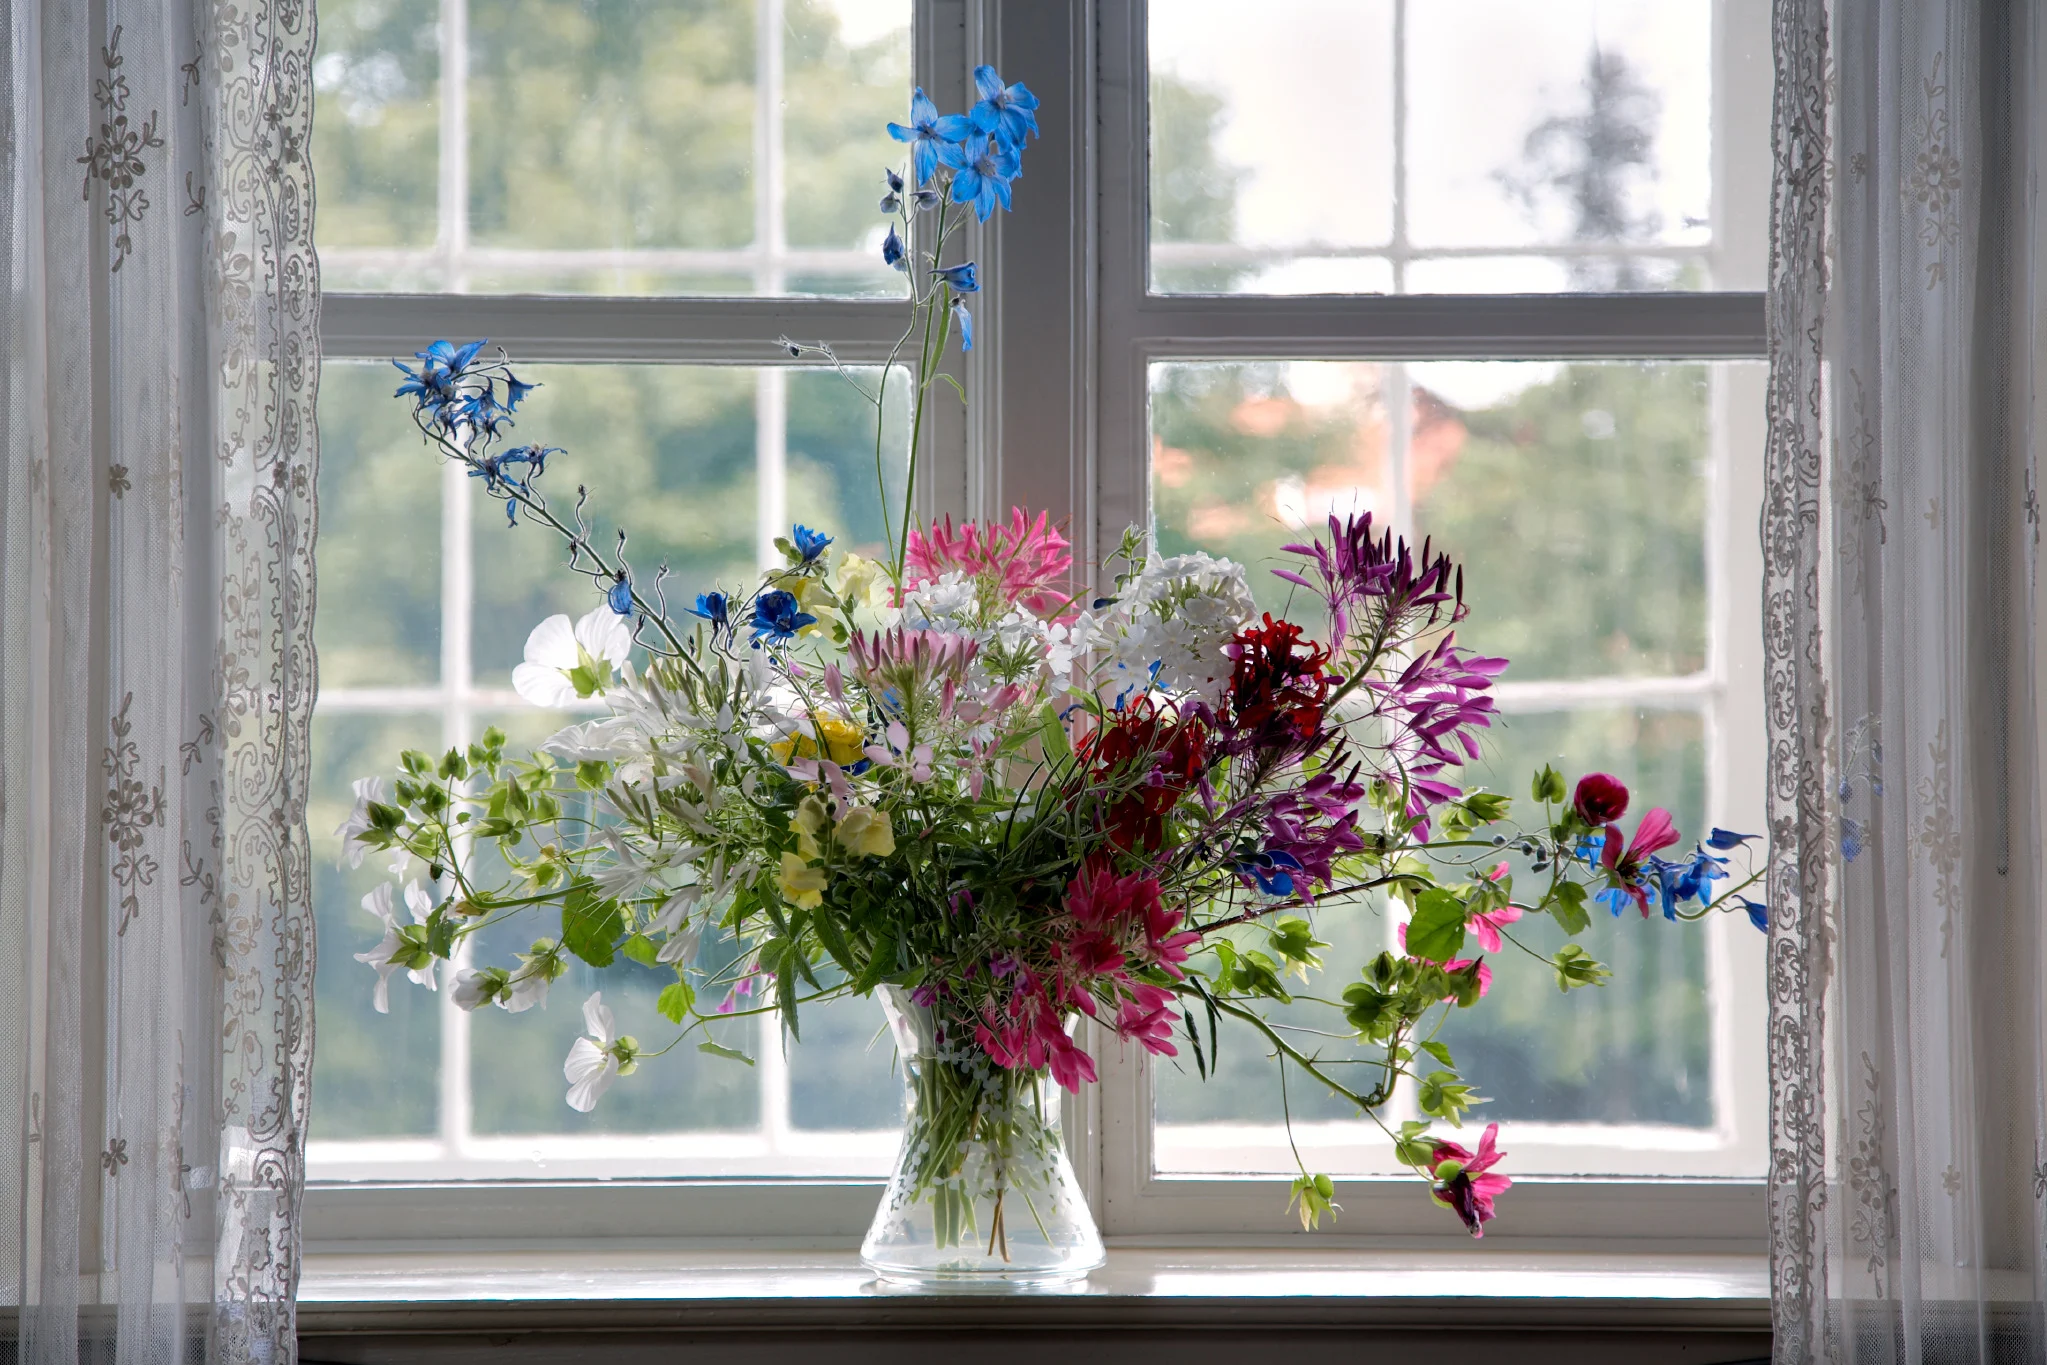 Blomsterarrangemang i fönstret på Karen Blixen-museet.